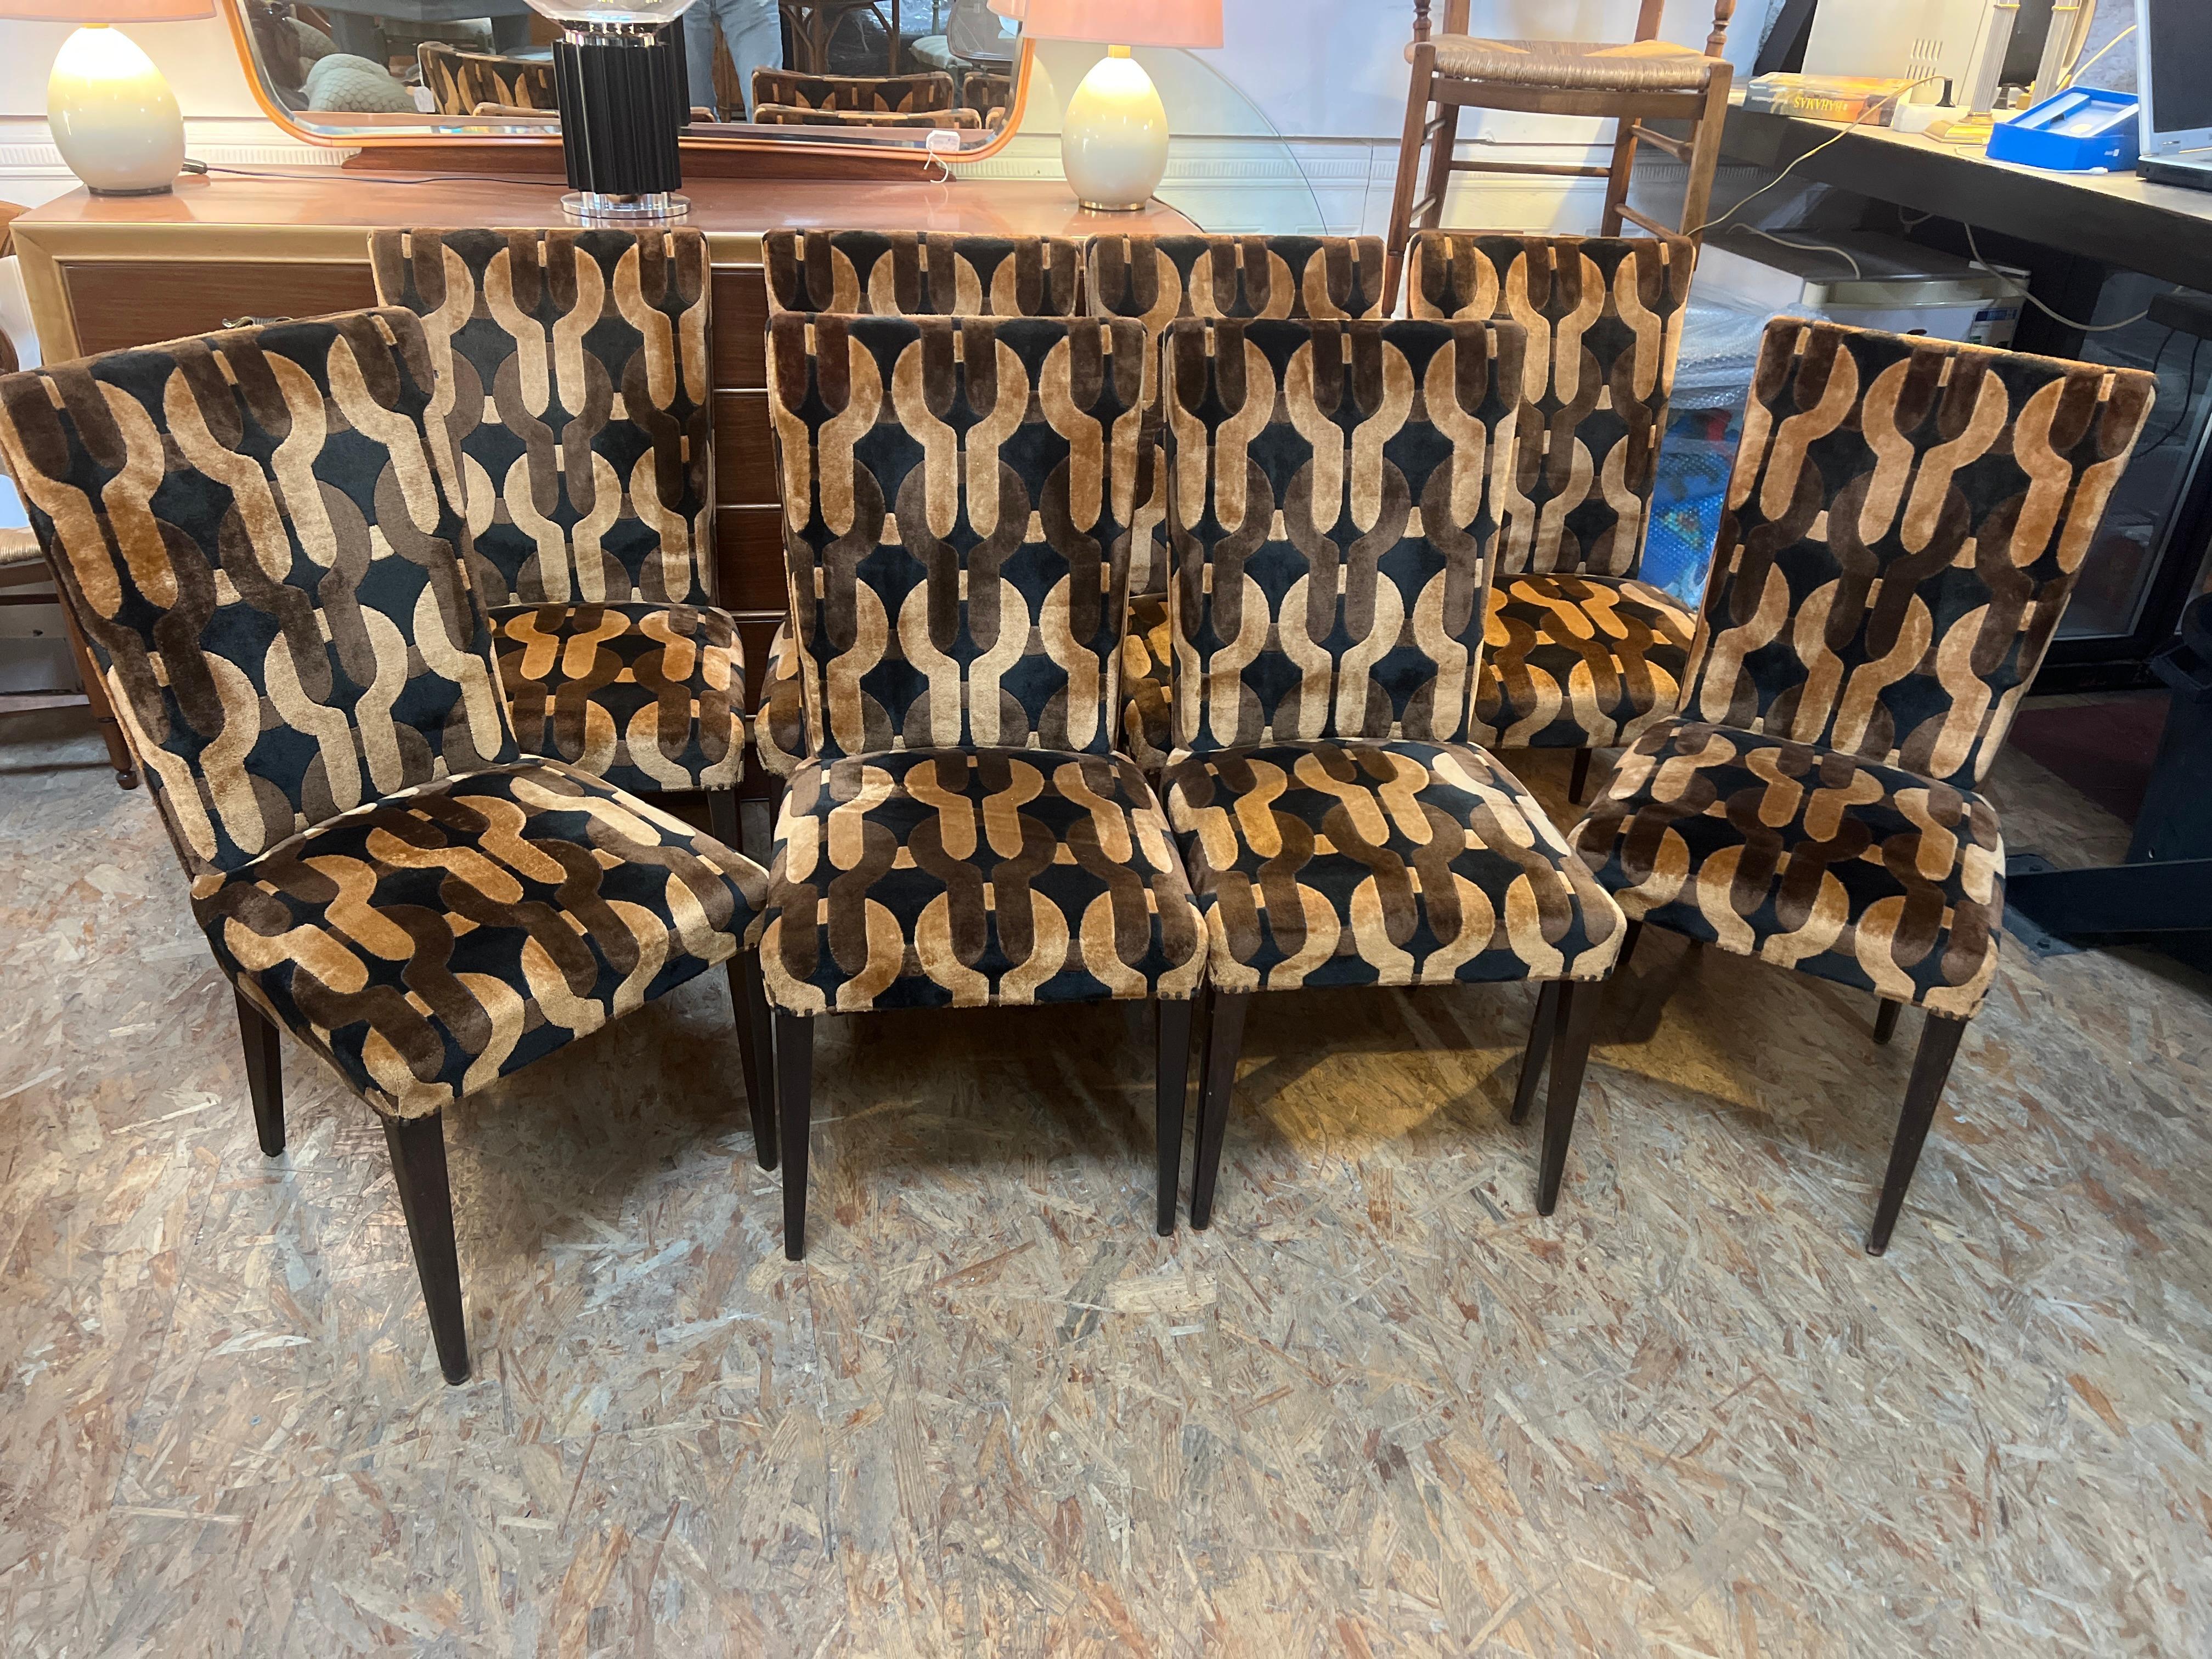 magnifique série de 8 chaises de Pierre Cardin, édition 1970
les tissus typiques de la Collection Sardin vous ramèneront à la période psychédélique des années 70
les sièges, leur confort sont en très bon état d'origine

Pietro Costante Cardin dit